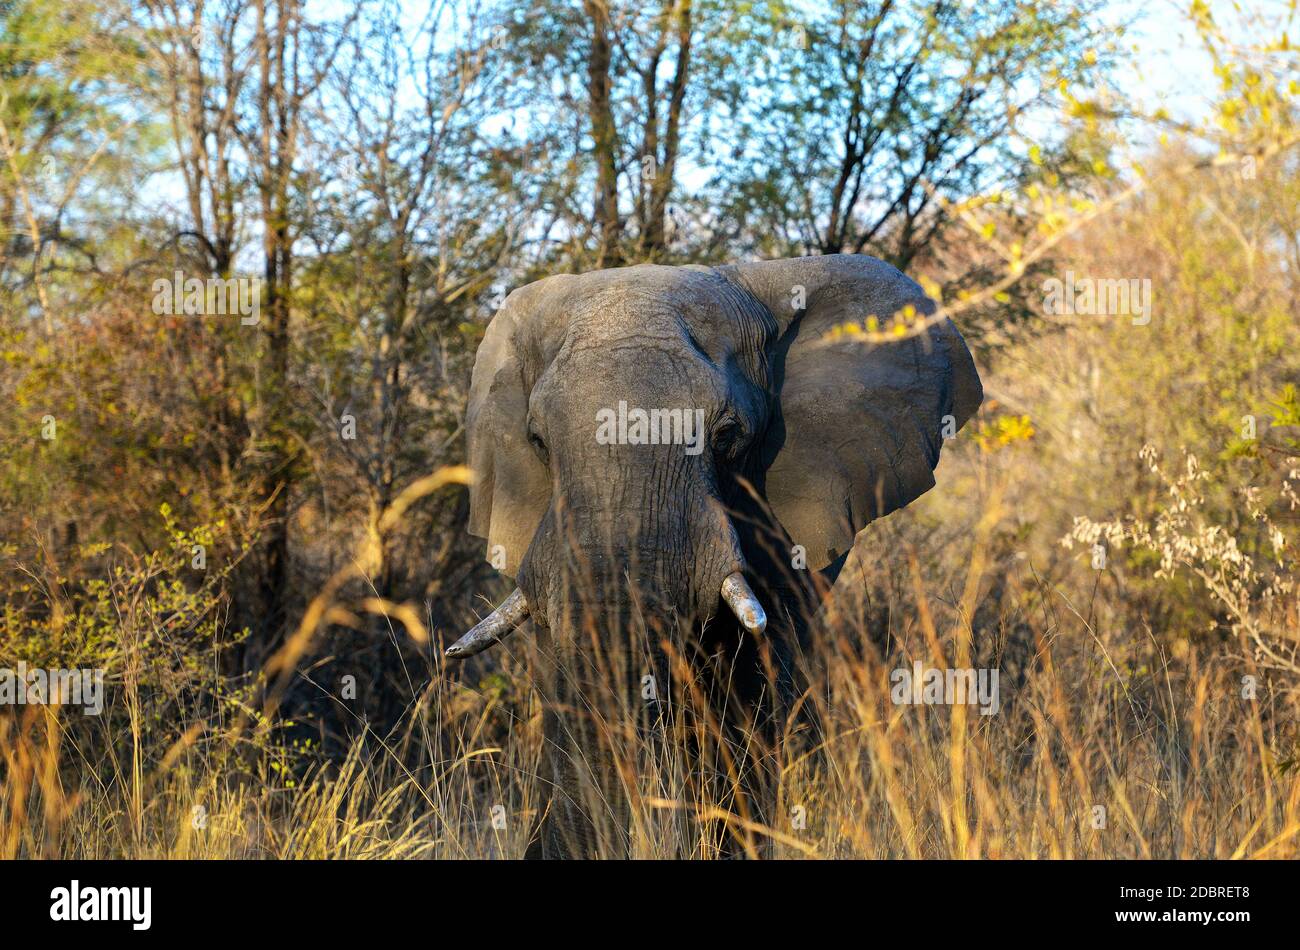 Big elephant on the Okavango River in Botswana Stock Photo